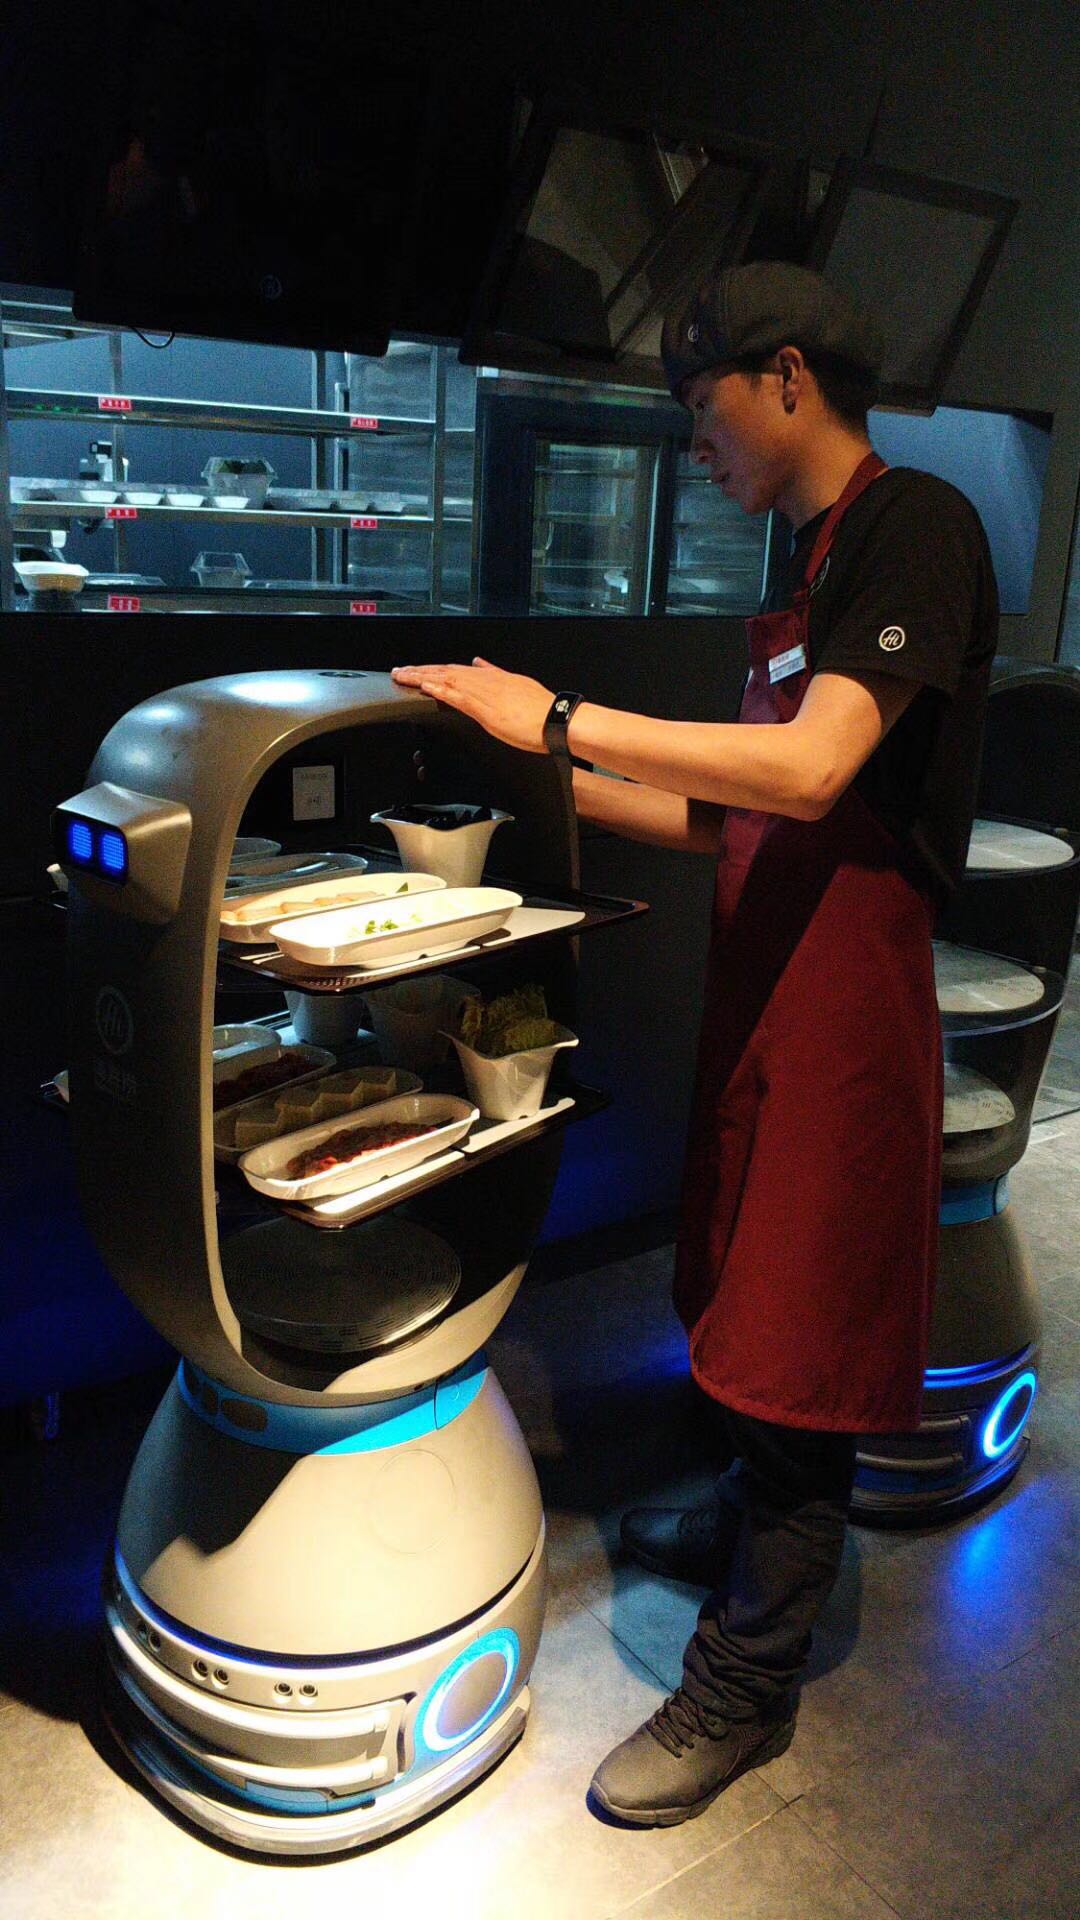 成都机器人餐厅图片